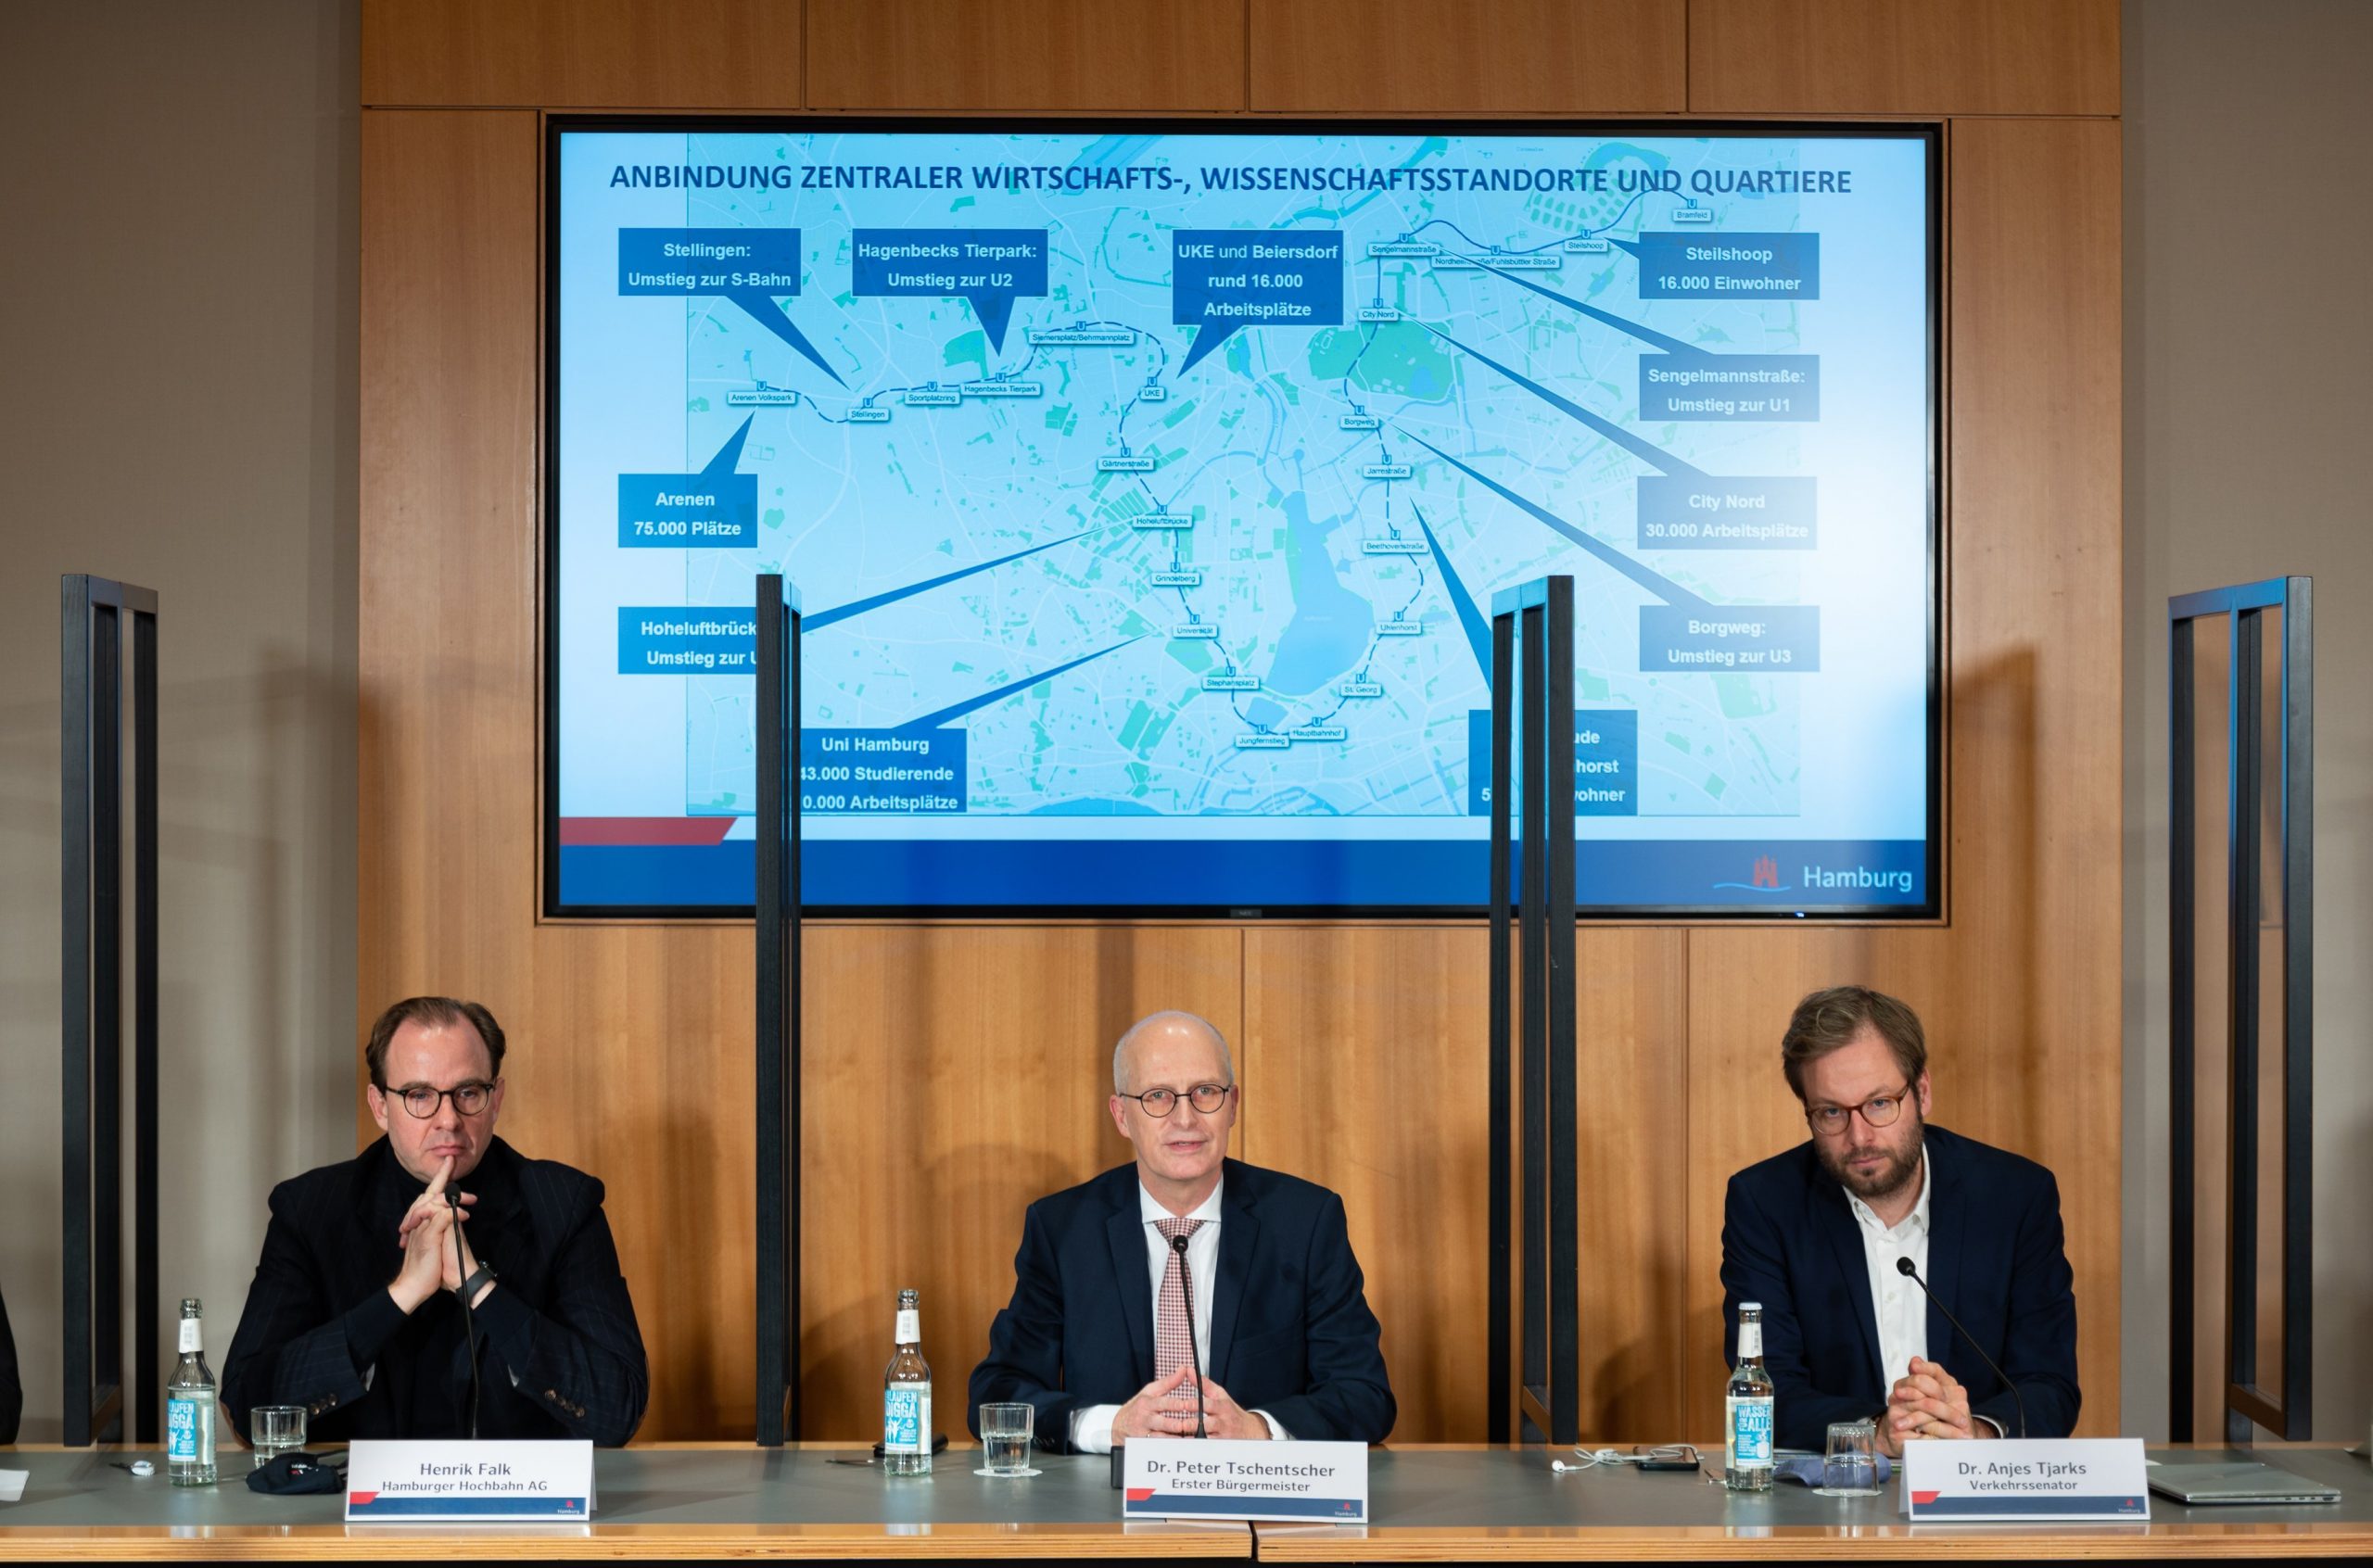 Henrik Falk (Hochbahn), Peter Tschentscher (SPD) und Anjes Tjarks (Grüne) bei der Vorstellung der Streckenführung der geplanten U5